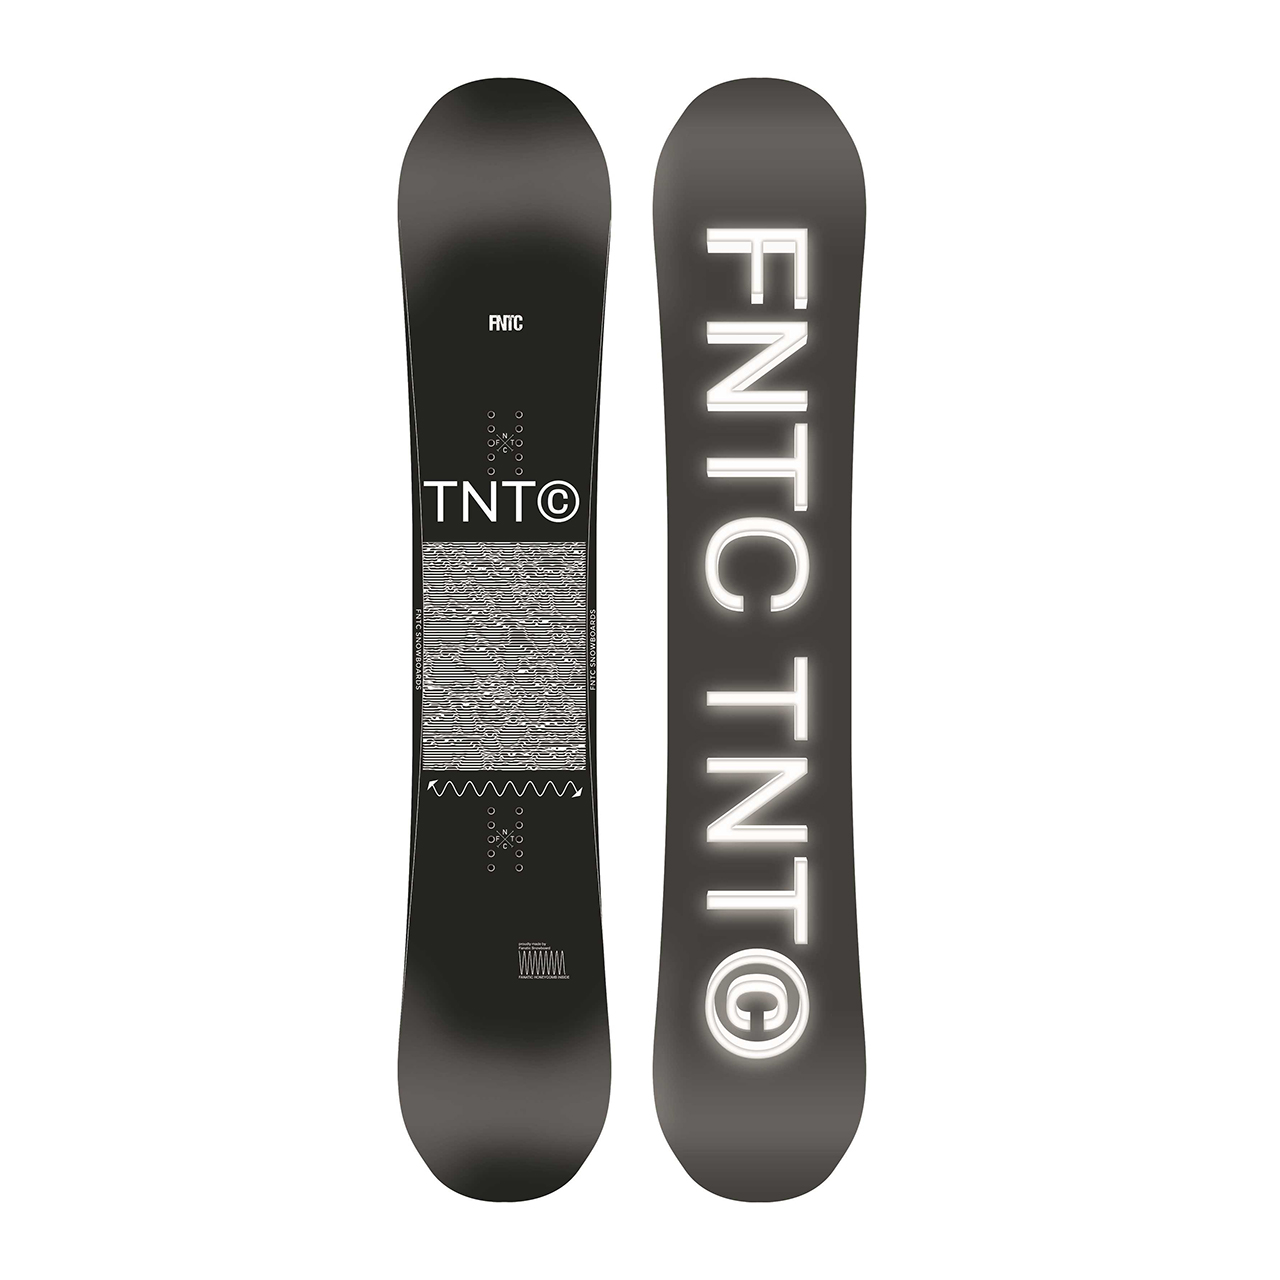 FNTC TNT R ×K2ビンディングセット グラトリ (ホットワックス済 